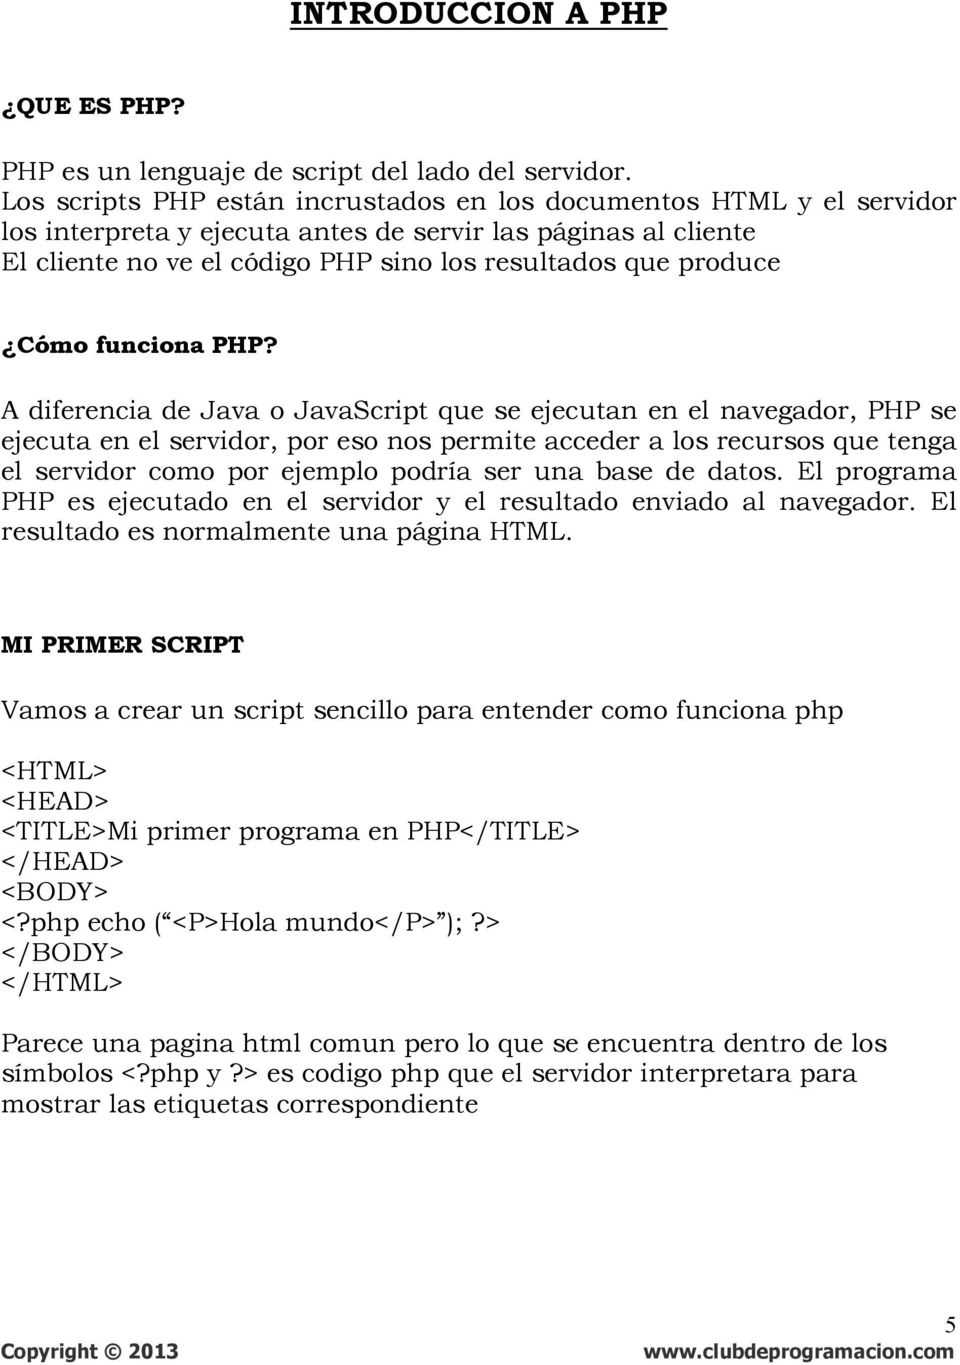 Cómo funciona PHP?